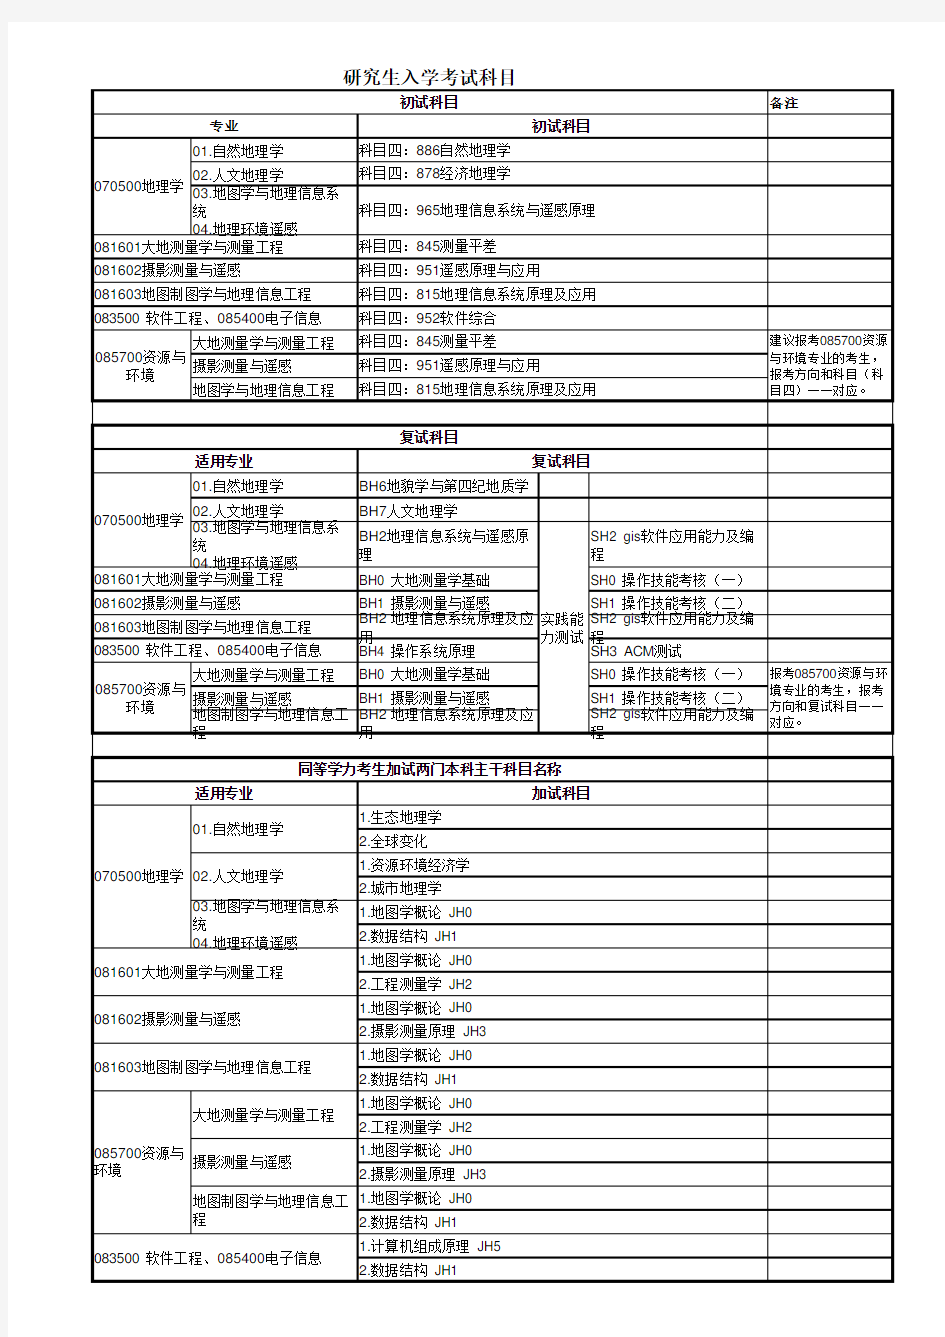 2020年中国地质大学(武汉)研究生入学考试科目明细-2020级